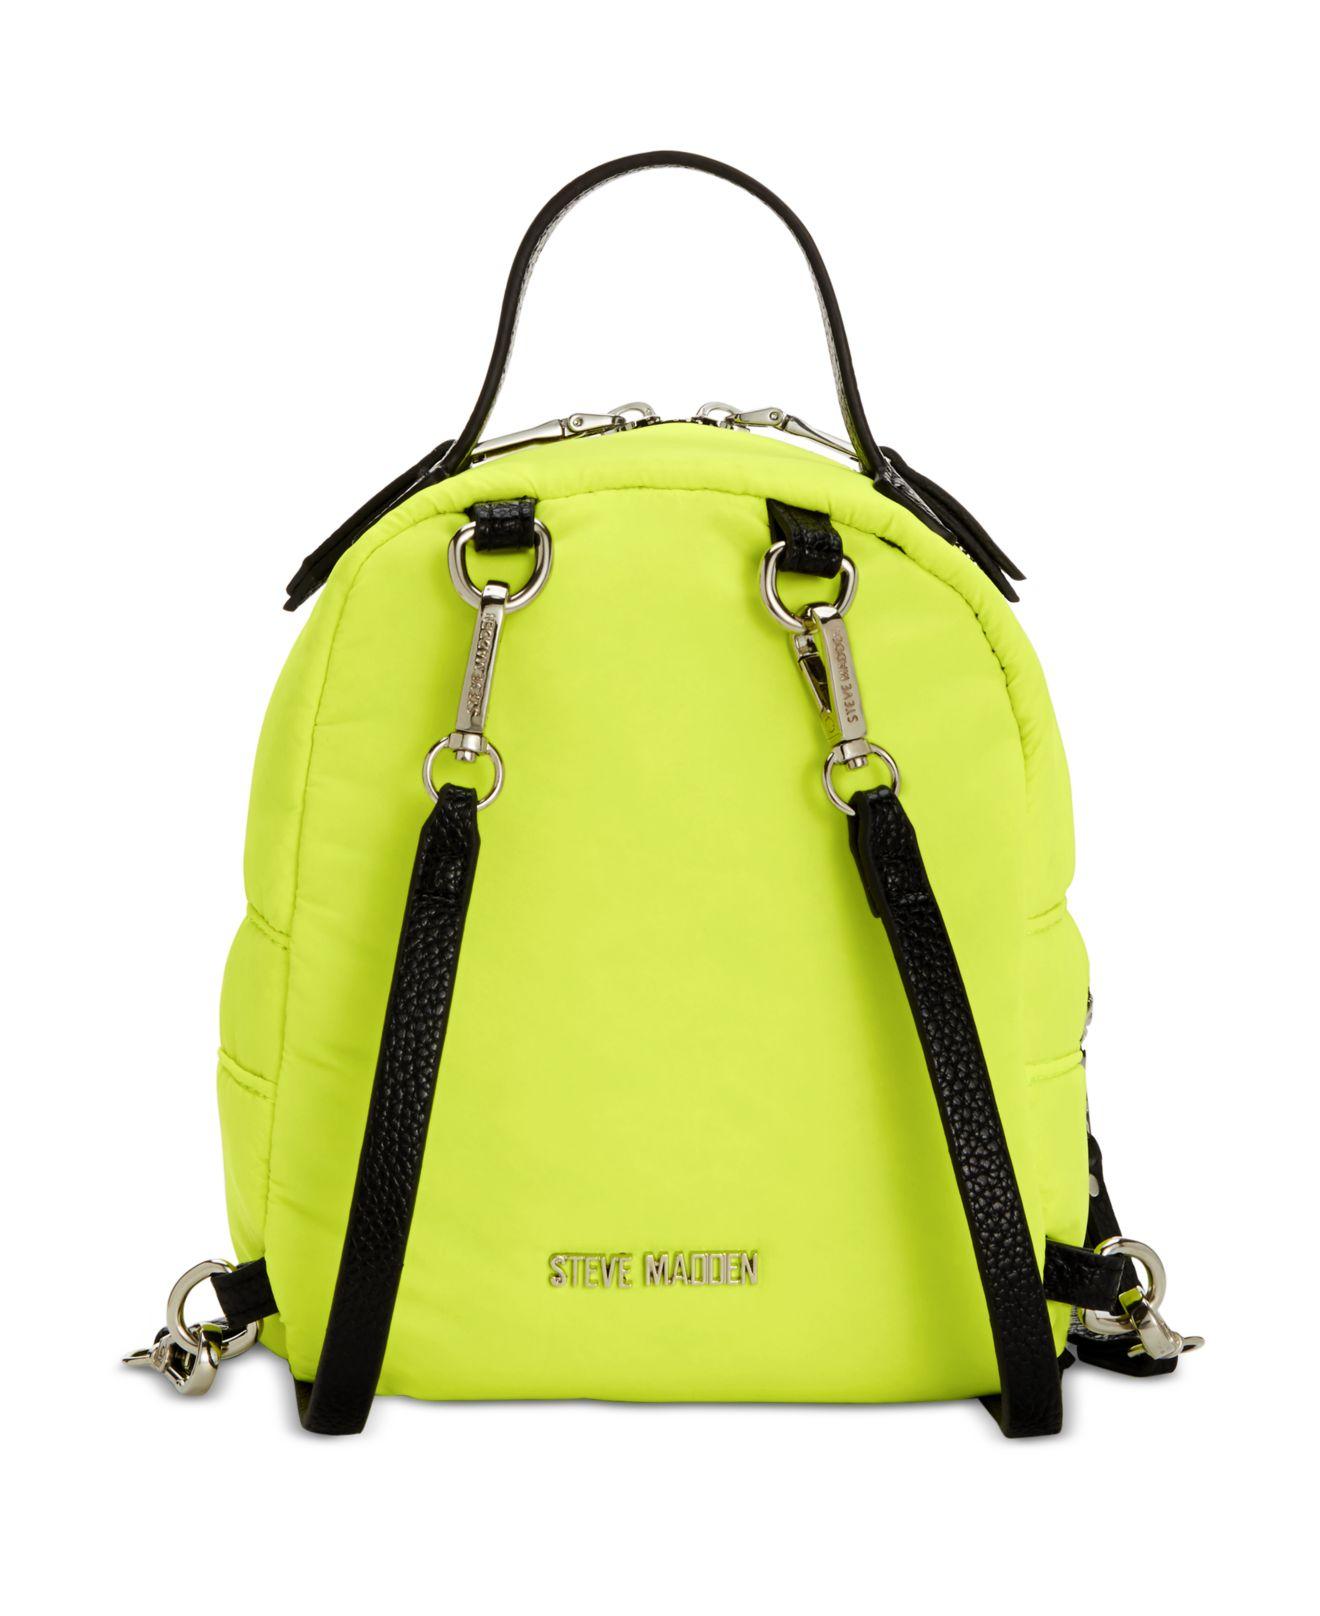 Steve Madden Logo Embossed Black Neon Zipper Backpack | eBay